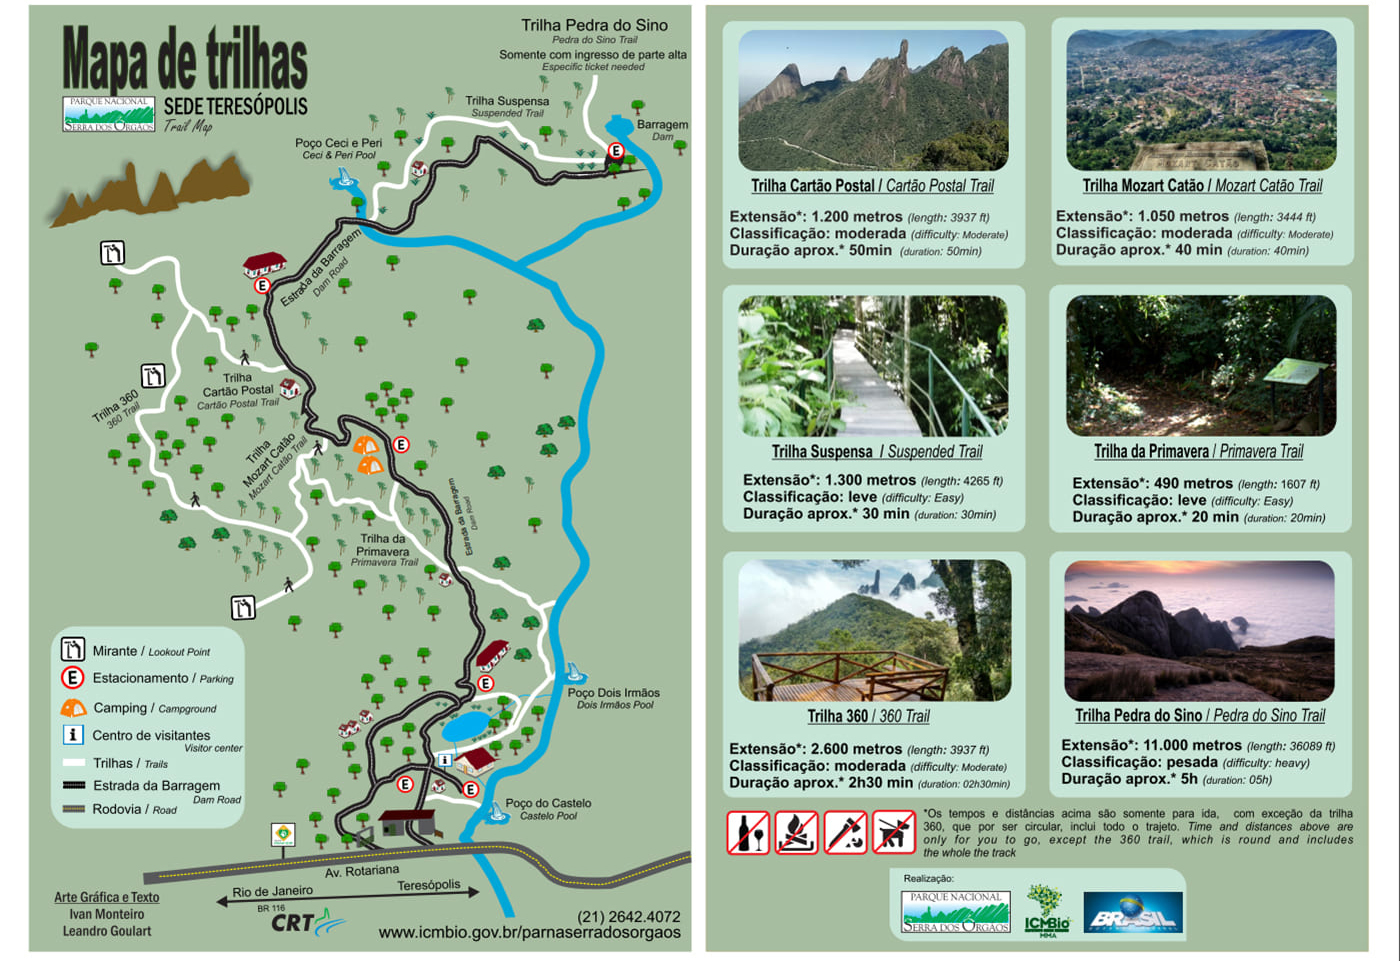 Lugares para visitar no Rio de Janeiro - Mapa de Trilhas do Parque Nacional da Serra dos Órgãos, sede Teresópolis | Foto: Reprodução/ICMBio.